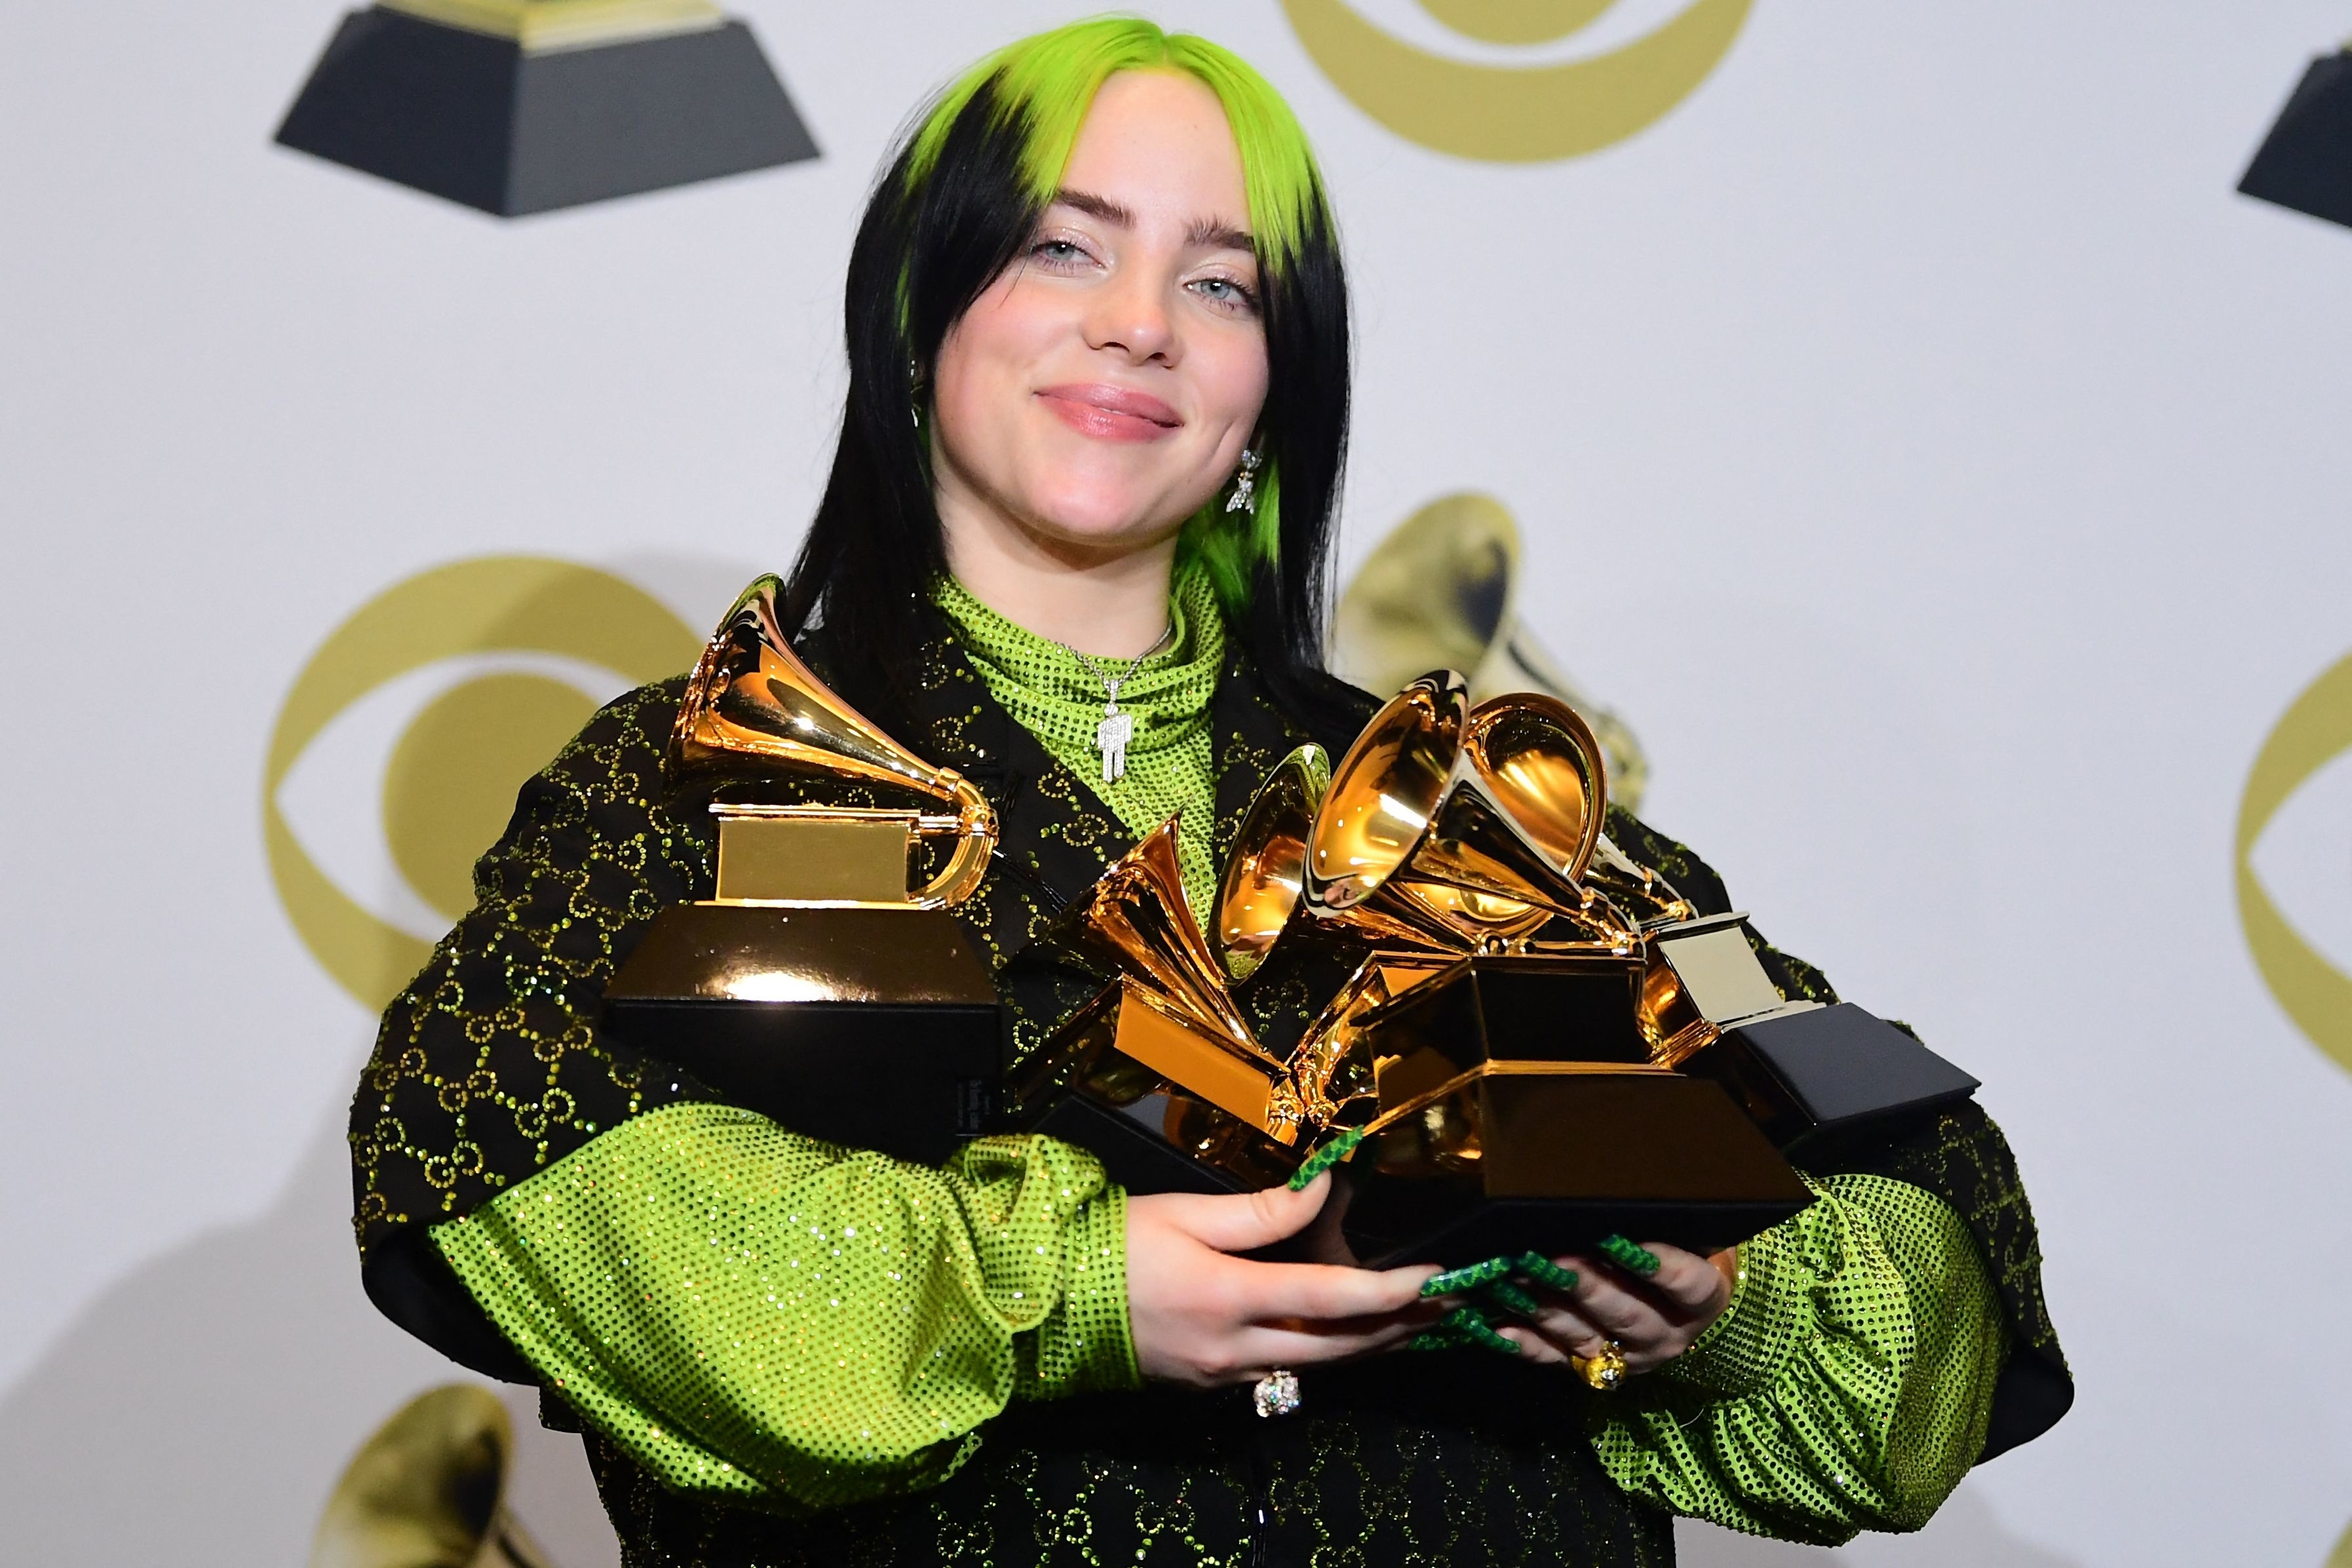 Billie holding her Grammys